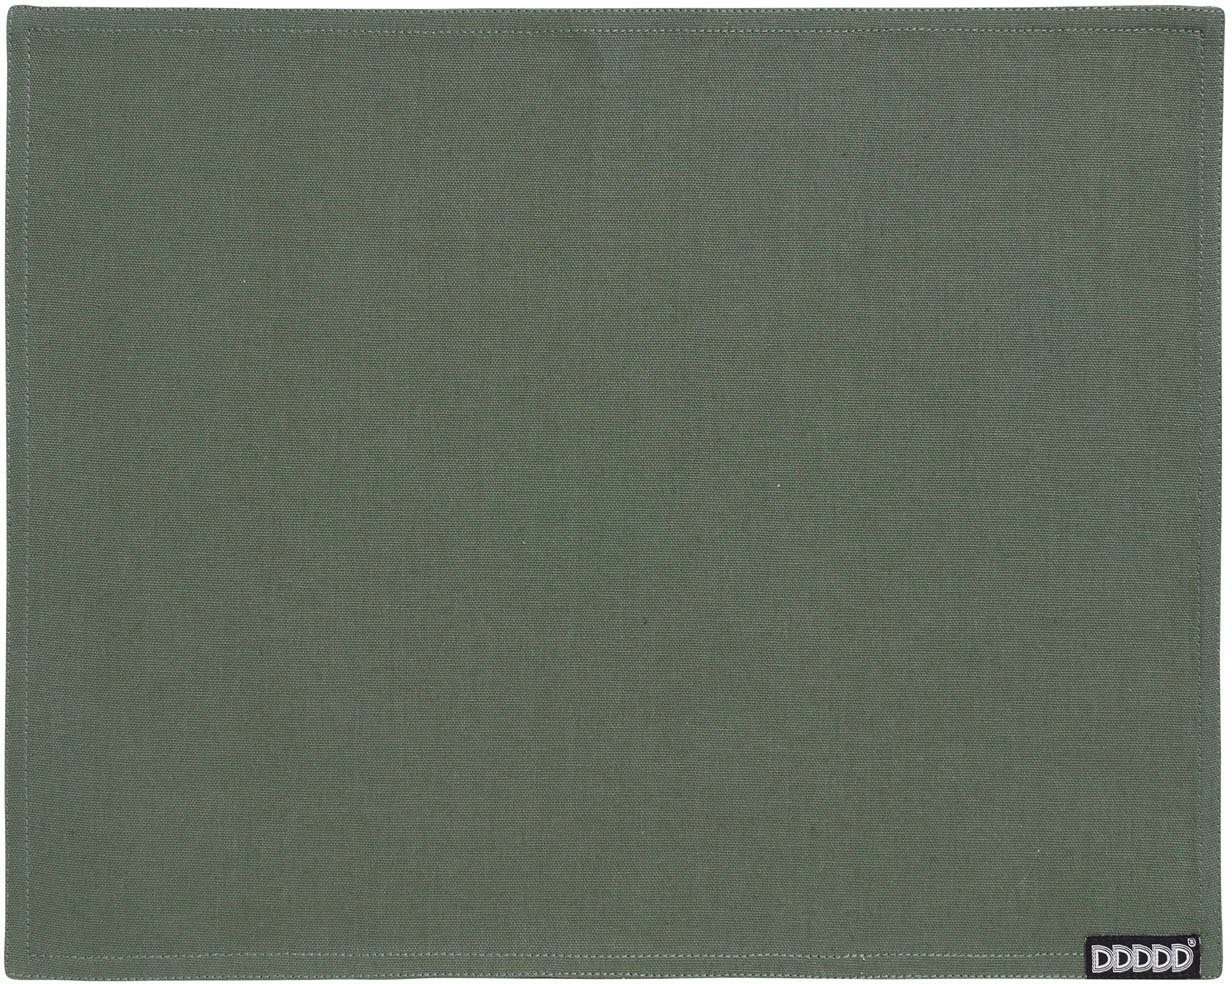 Baumwolle tannengrün 2-St), Platzset, 35x45 Kit, Platzdecke, DDDDD, cm, (Set,